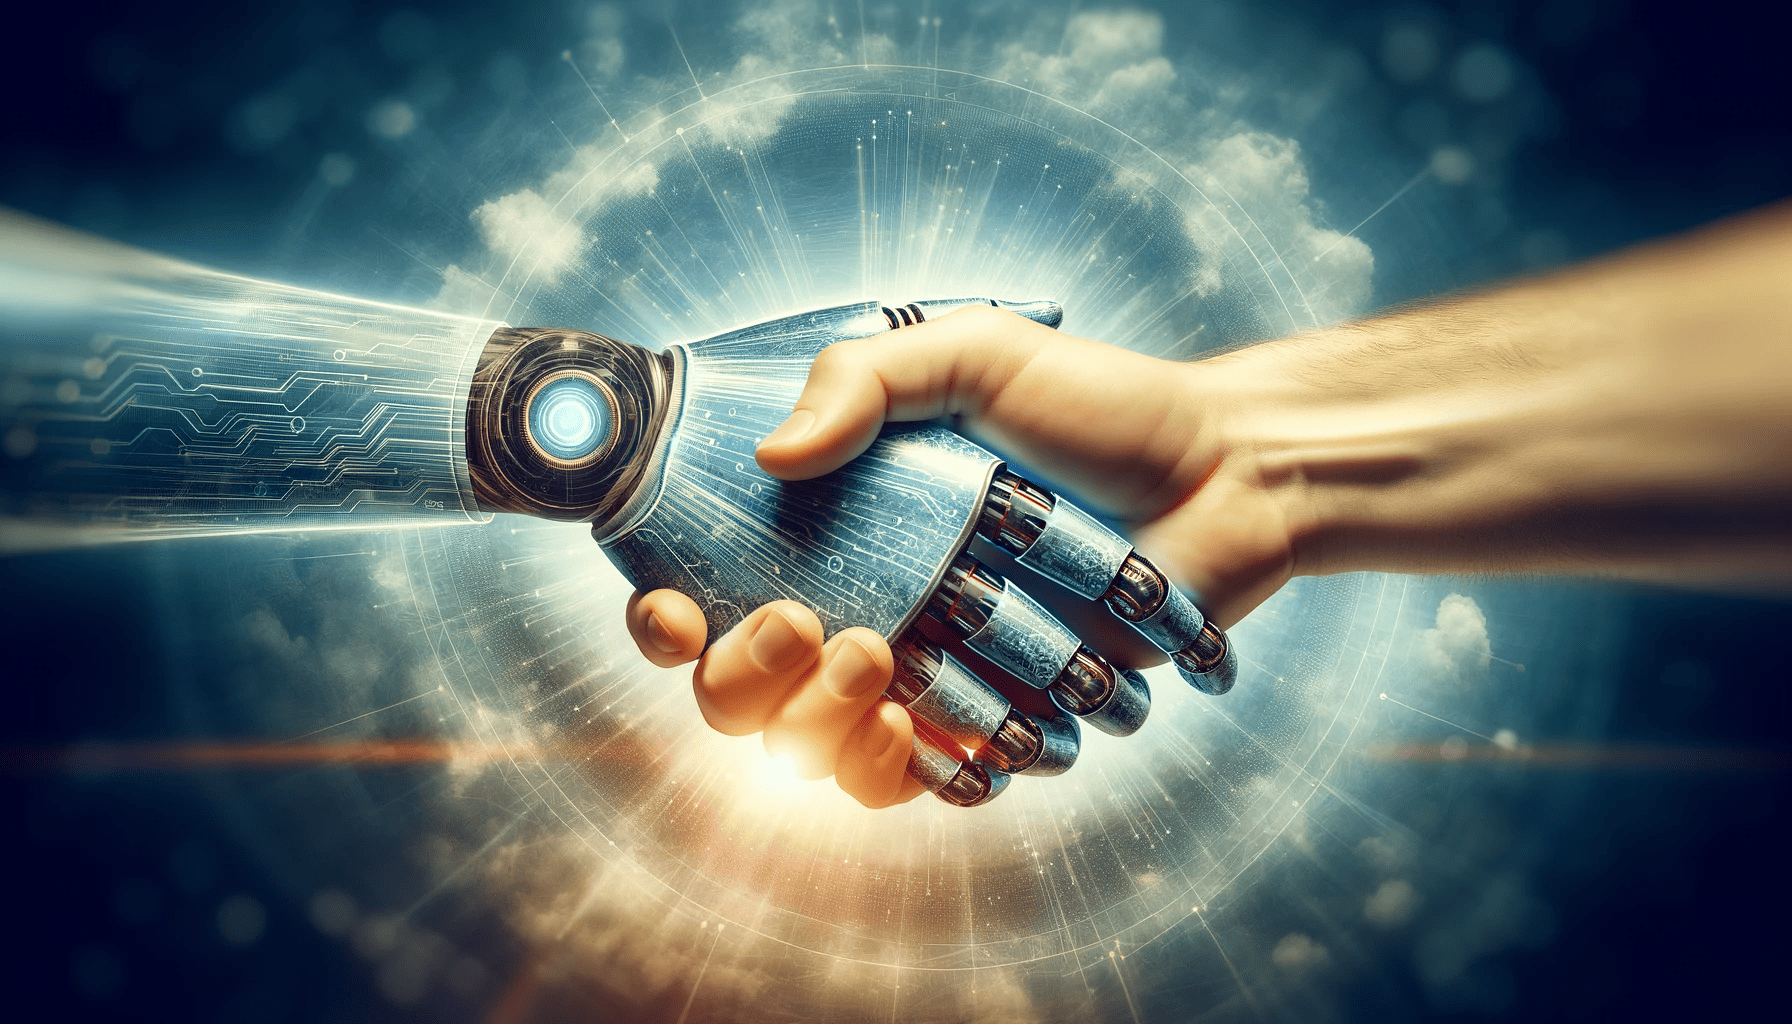 et-symbolsk-håndtrykk-mellom-en-menneskelig-hånd-og-en-digital-robot-hånd-representerer-samarbeidet-mellom-mennesker-og-AI